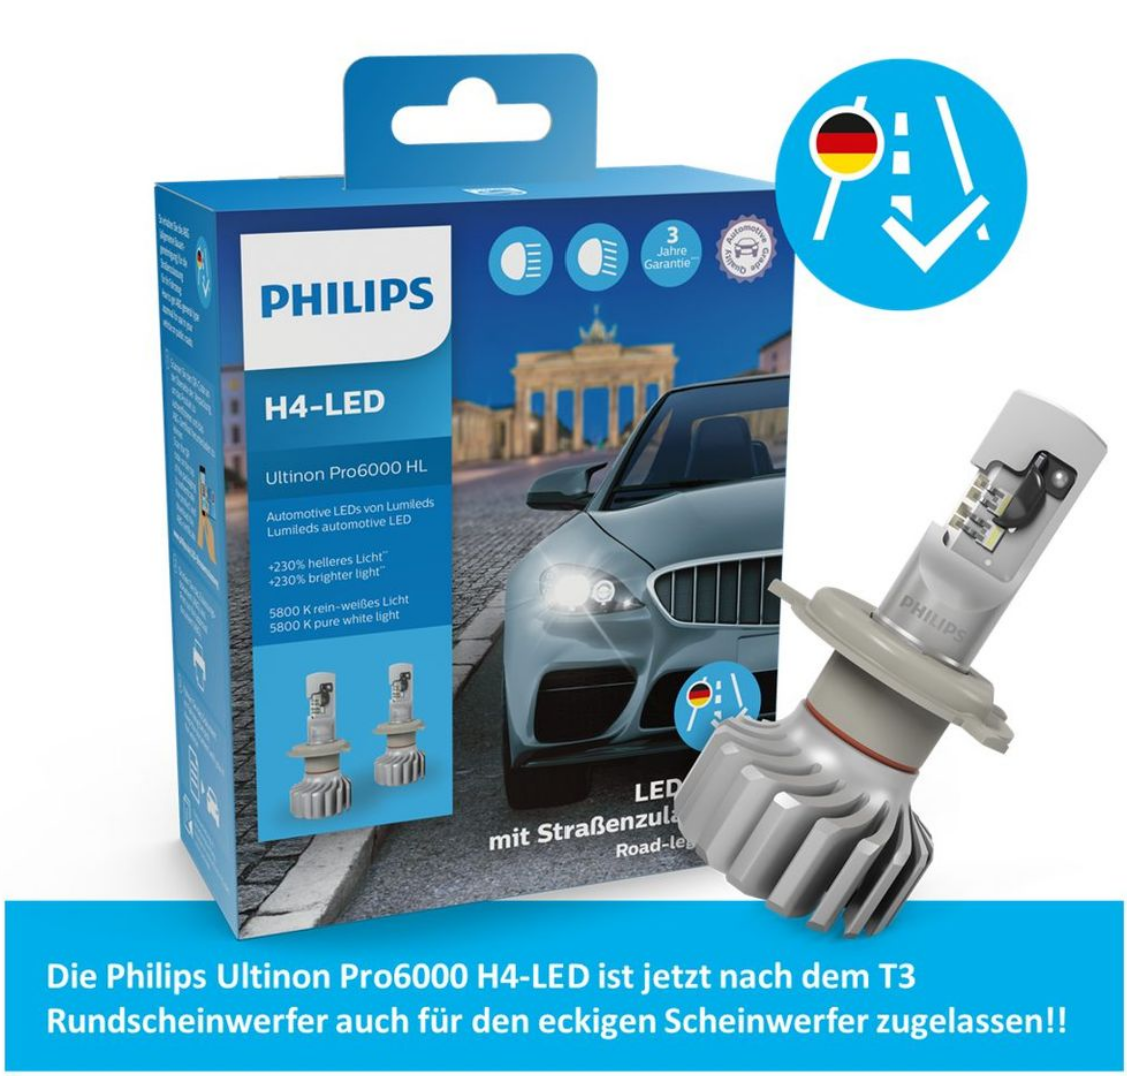 Philips H4 Led für eckige Scheinwerfer - Berichte / Anleitungen /  Linksammlung 